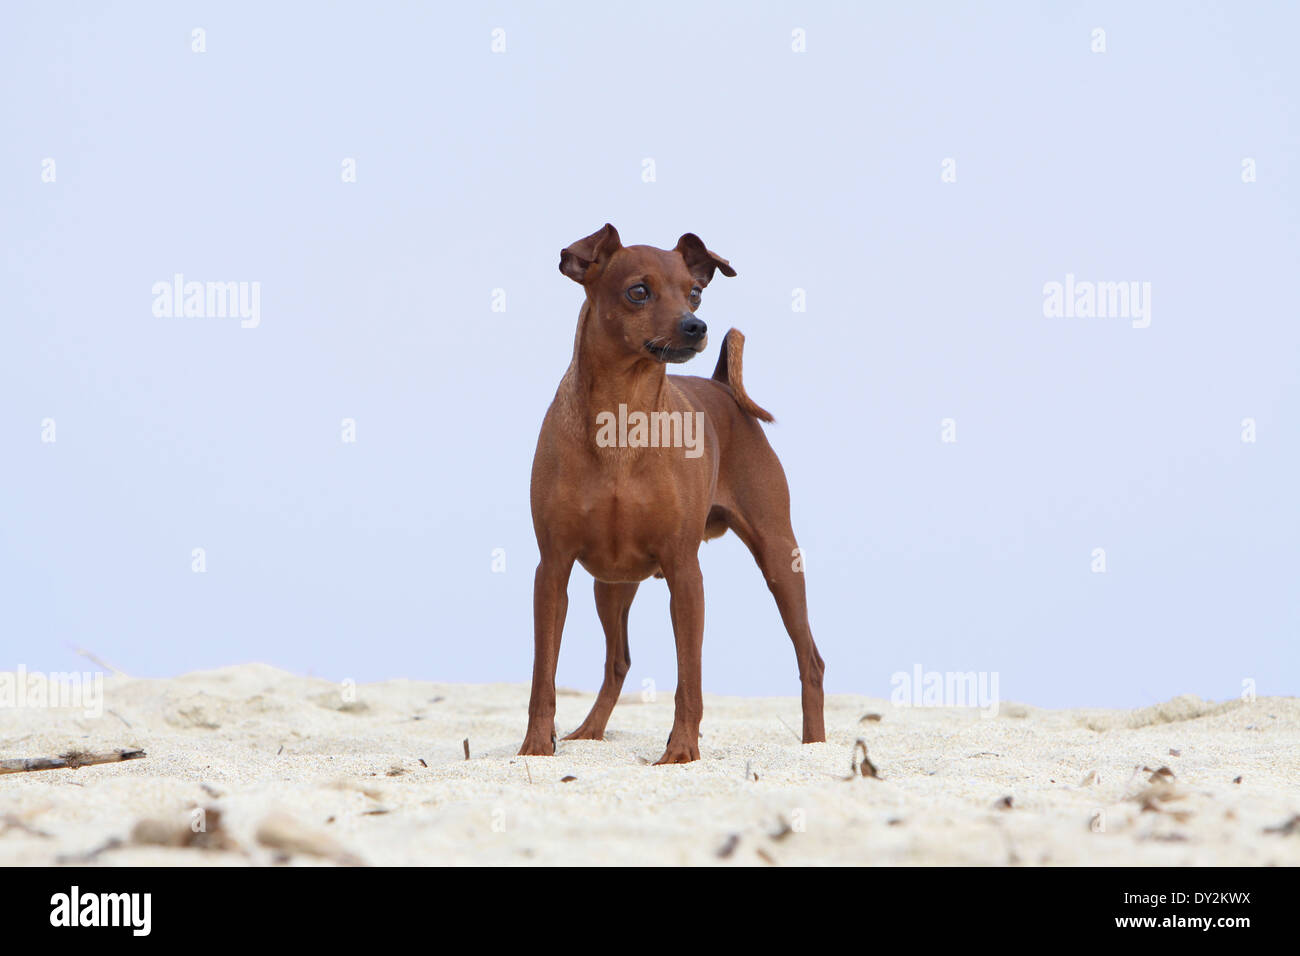 Dog Miniature Pinscher / adult standing on the beach Stock Photo